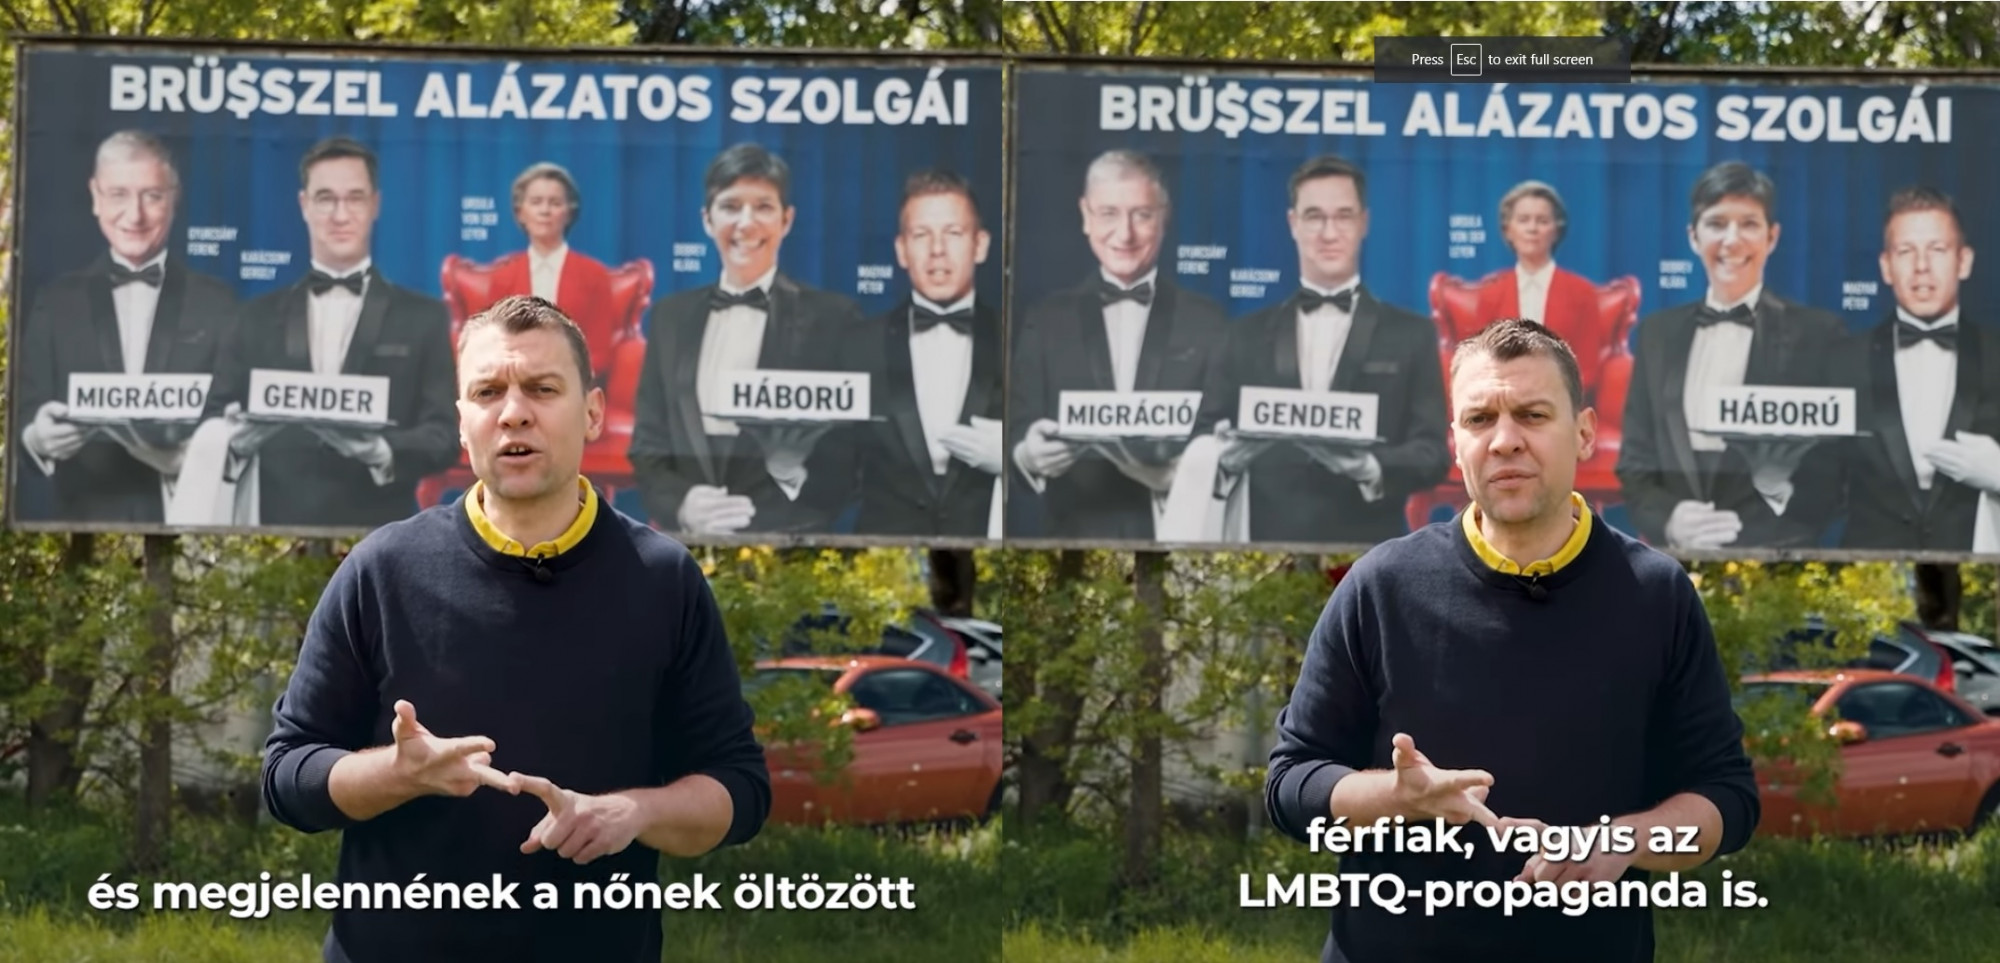 Menczernek el kellett magyaráznia, hogy mi van a Fidesz új plakátján